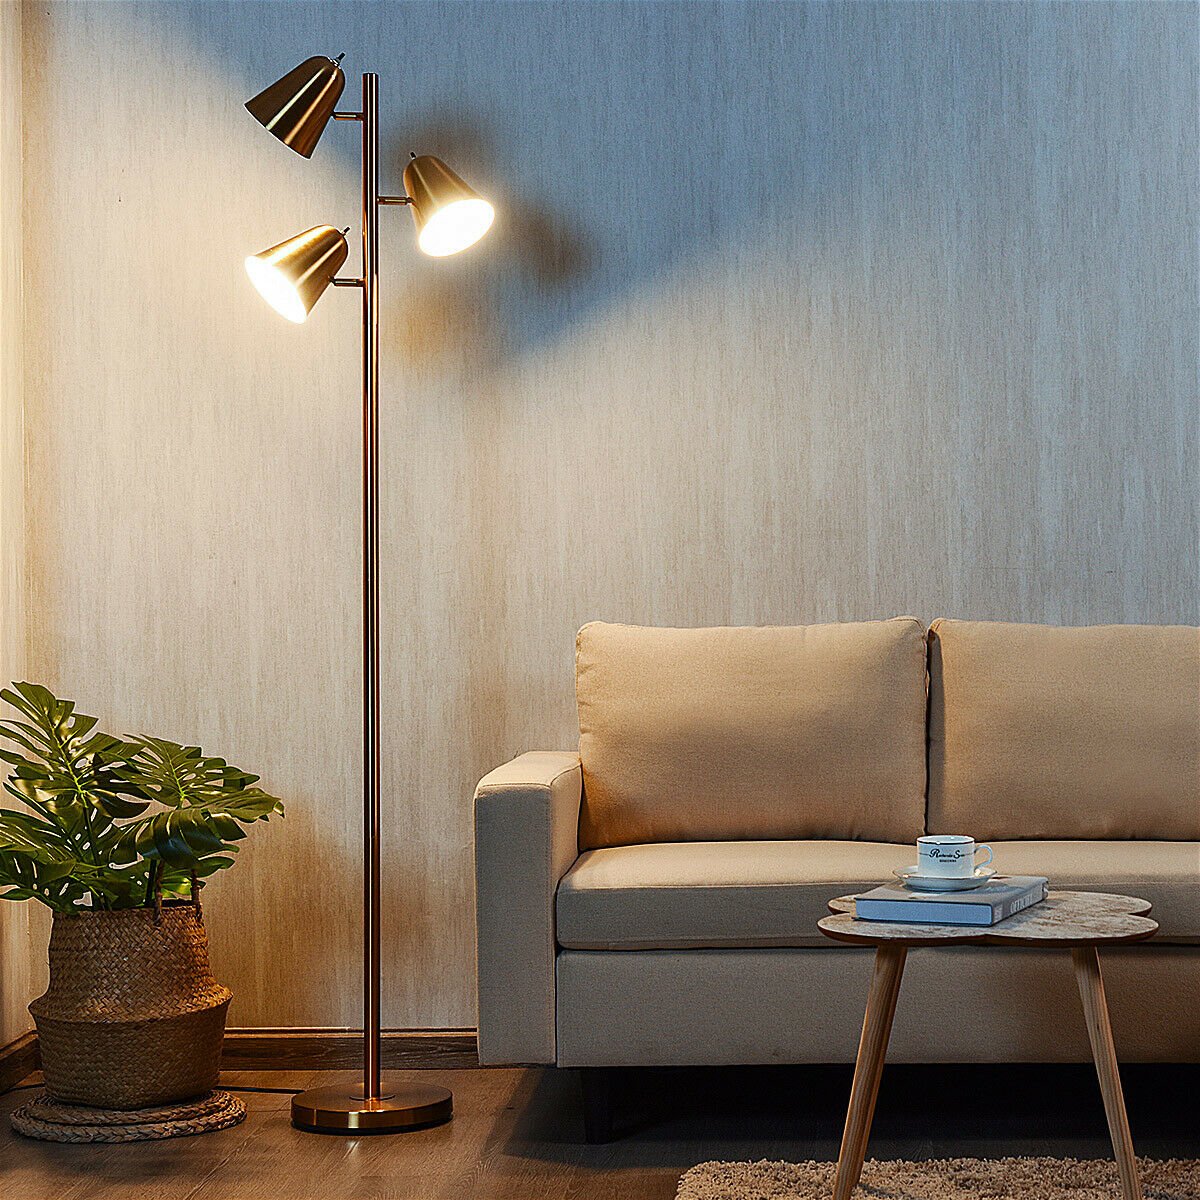 64 Inch 3-Light LED Floor Lamp Reading Light for Living Room Bedroom - Golden, Golden